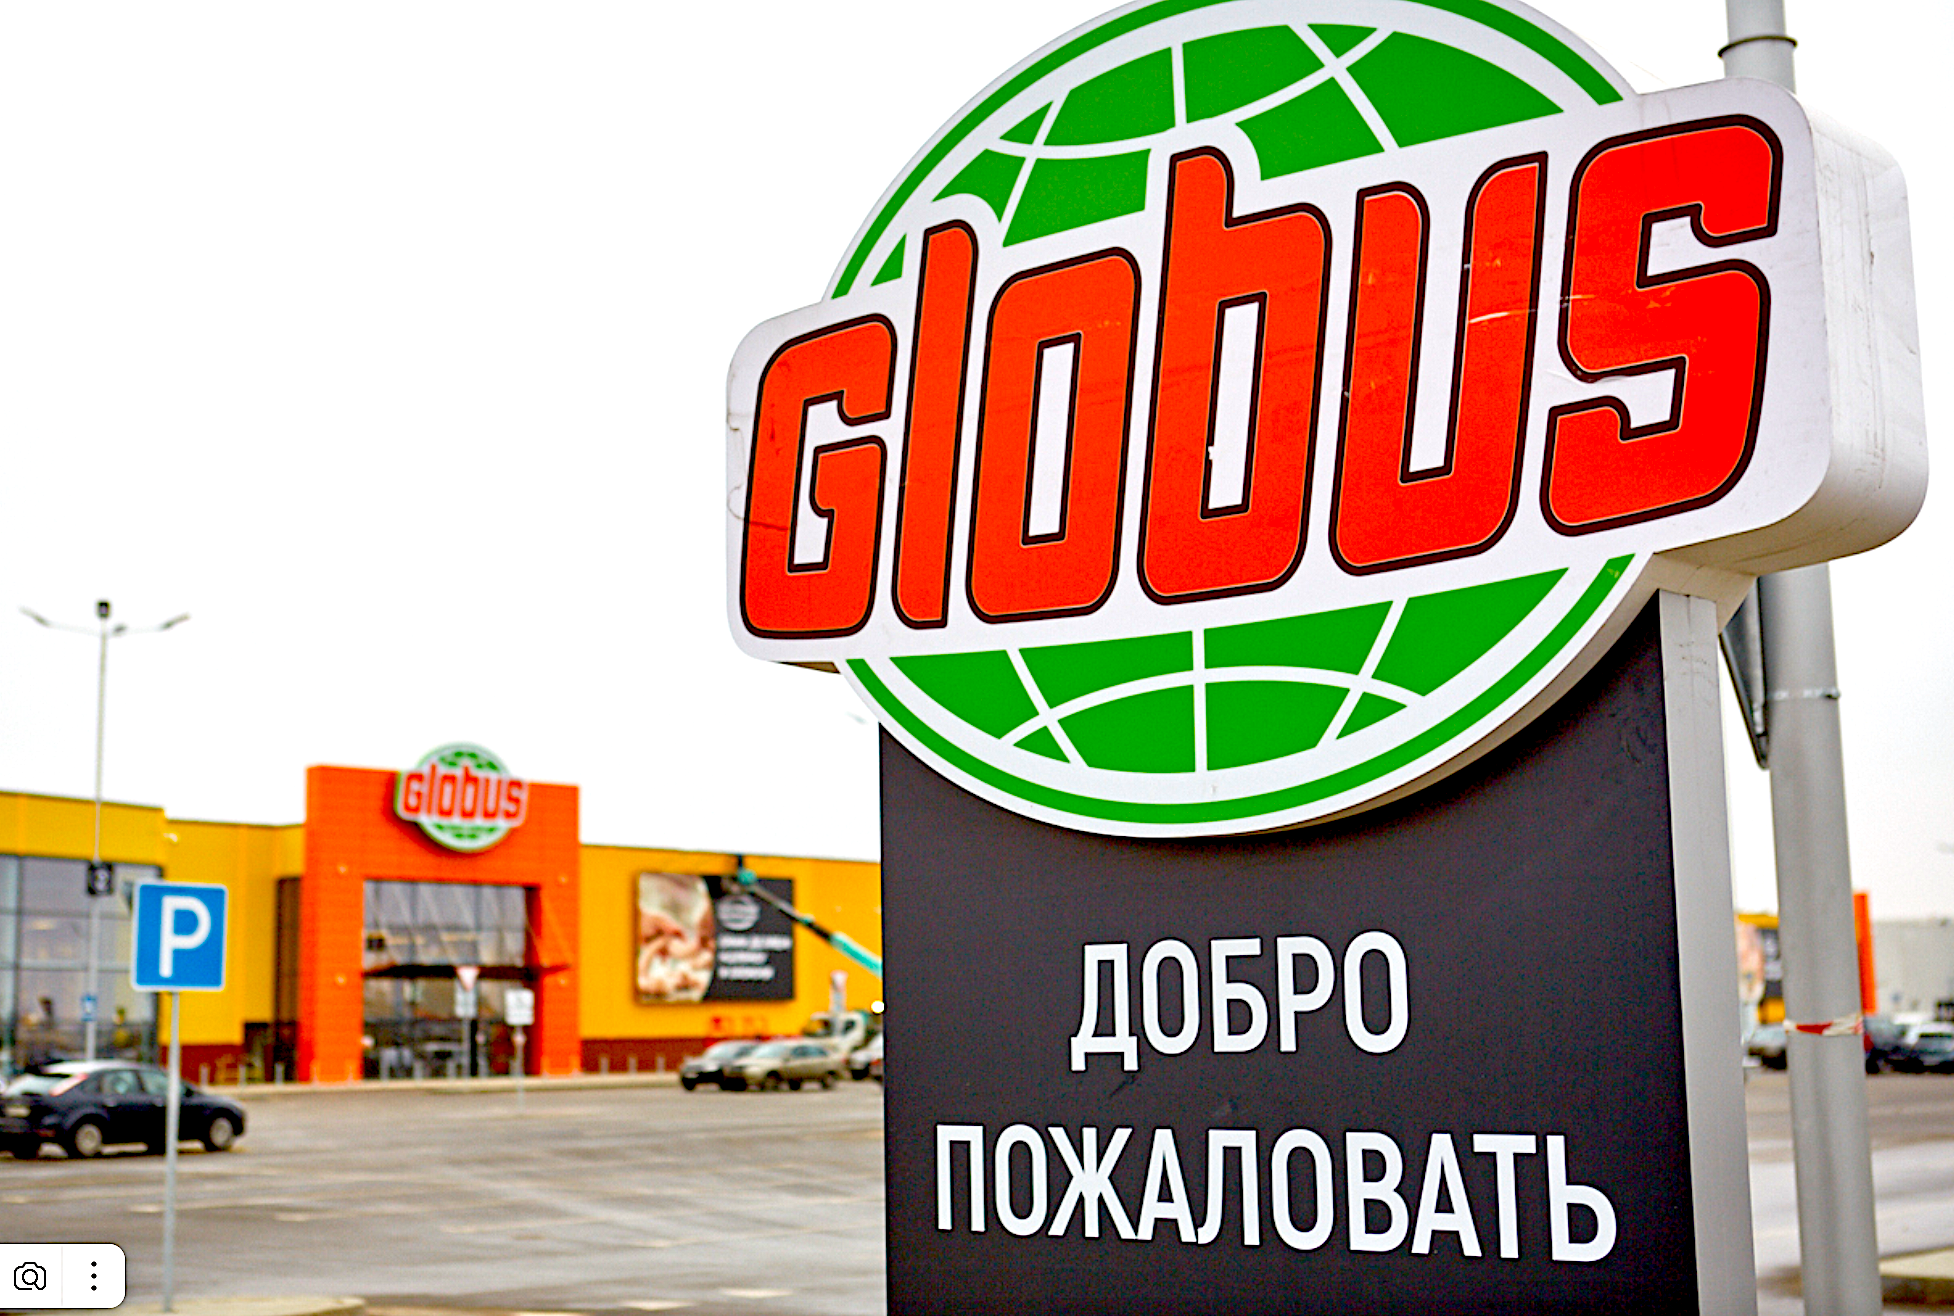 Сайт магазина глобус москва